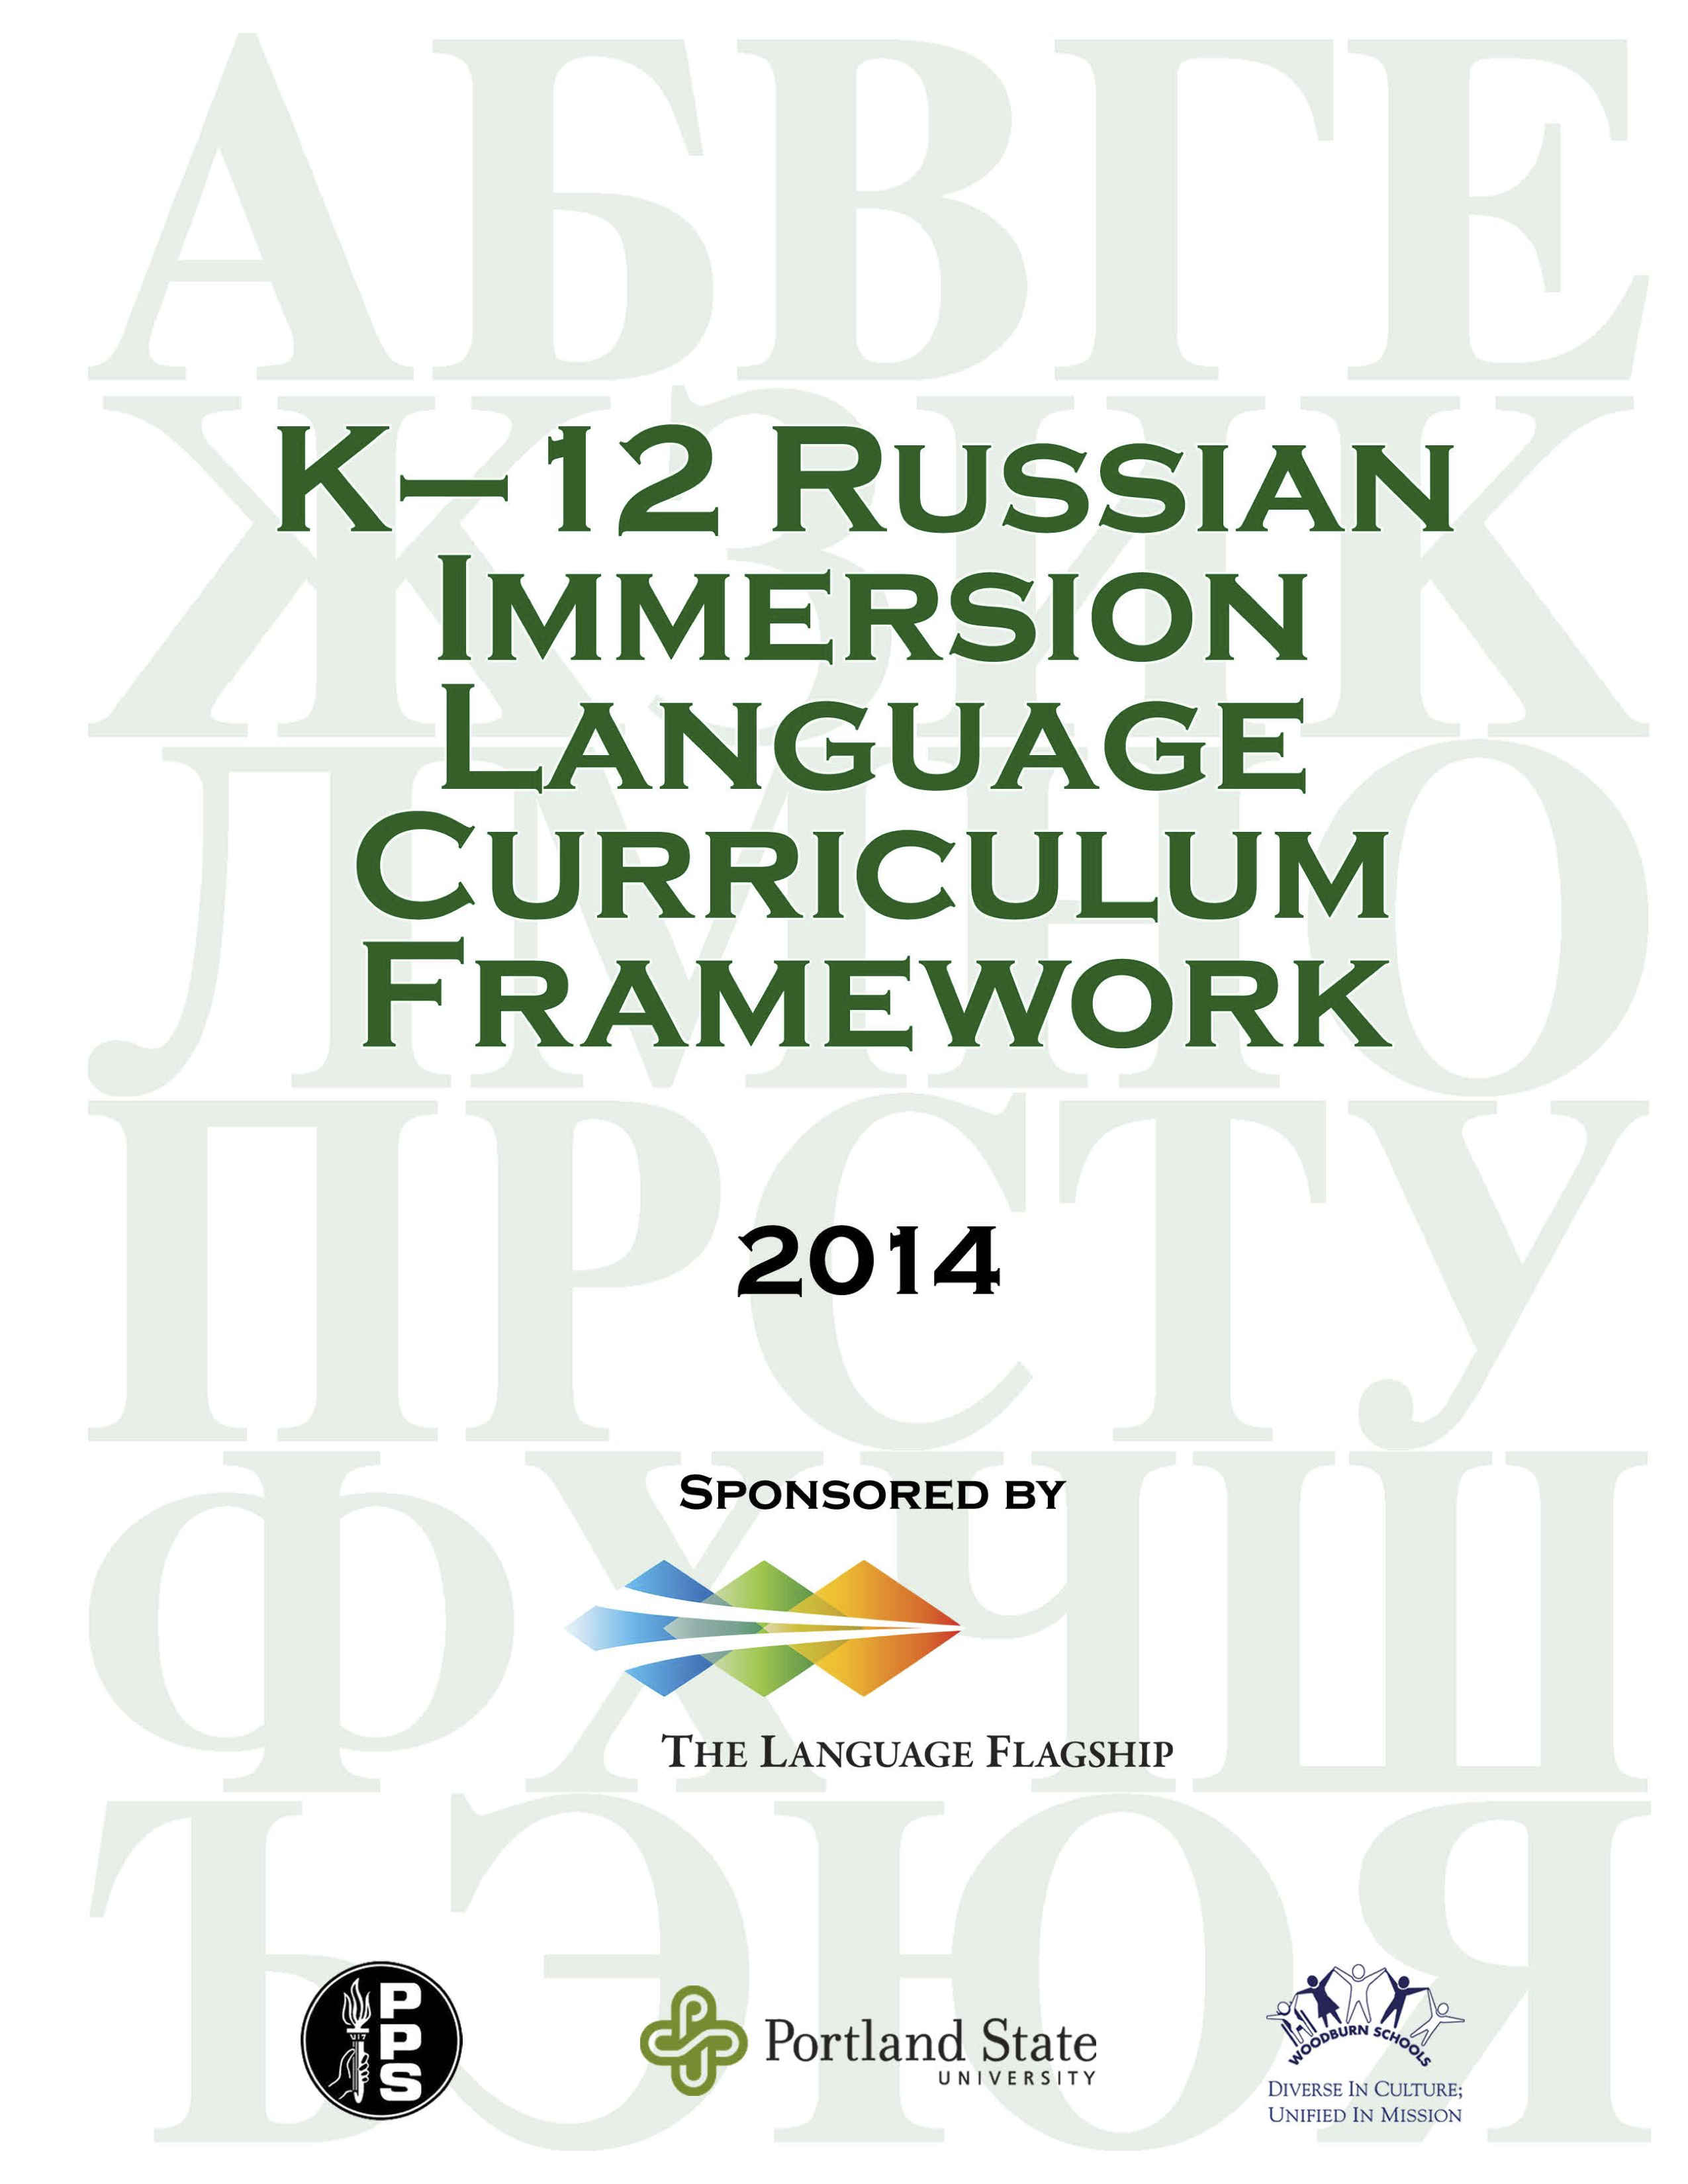 Cover design of language curriculum framework